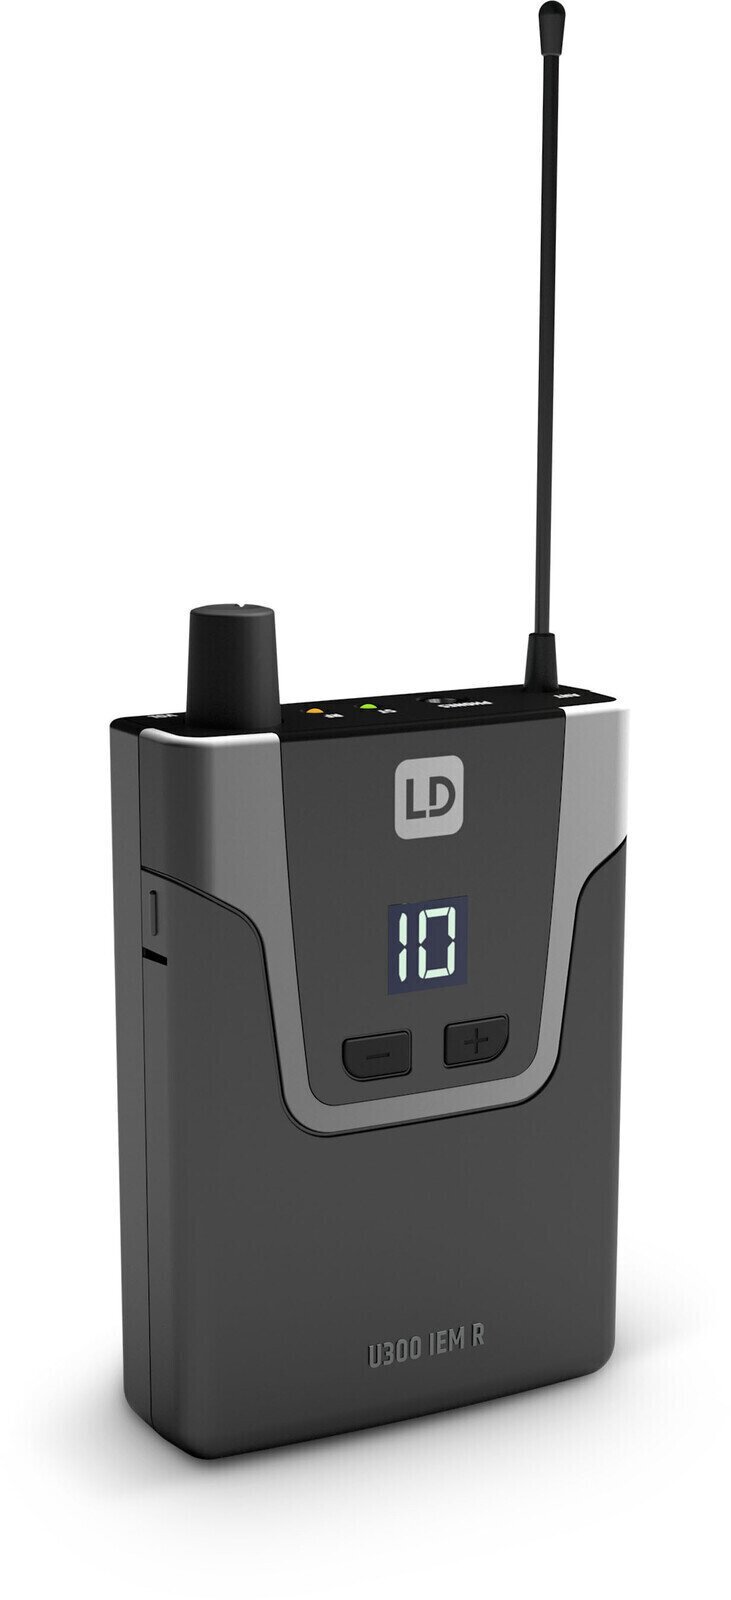 Ricevitore per sistemi wireless LD Systems U305 IEM R